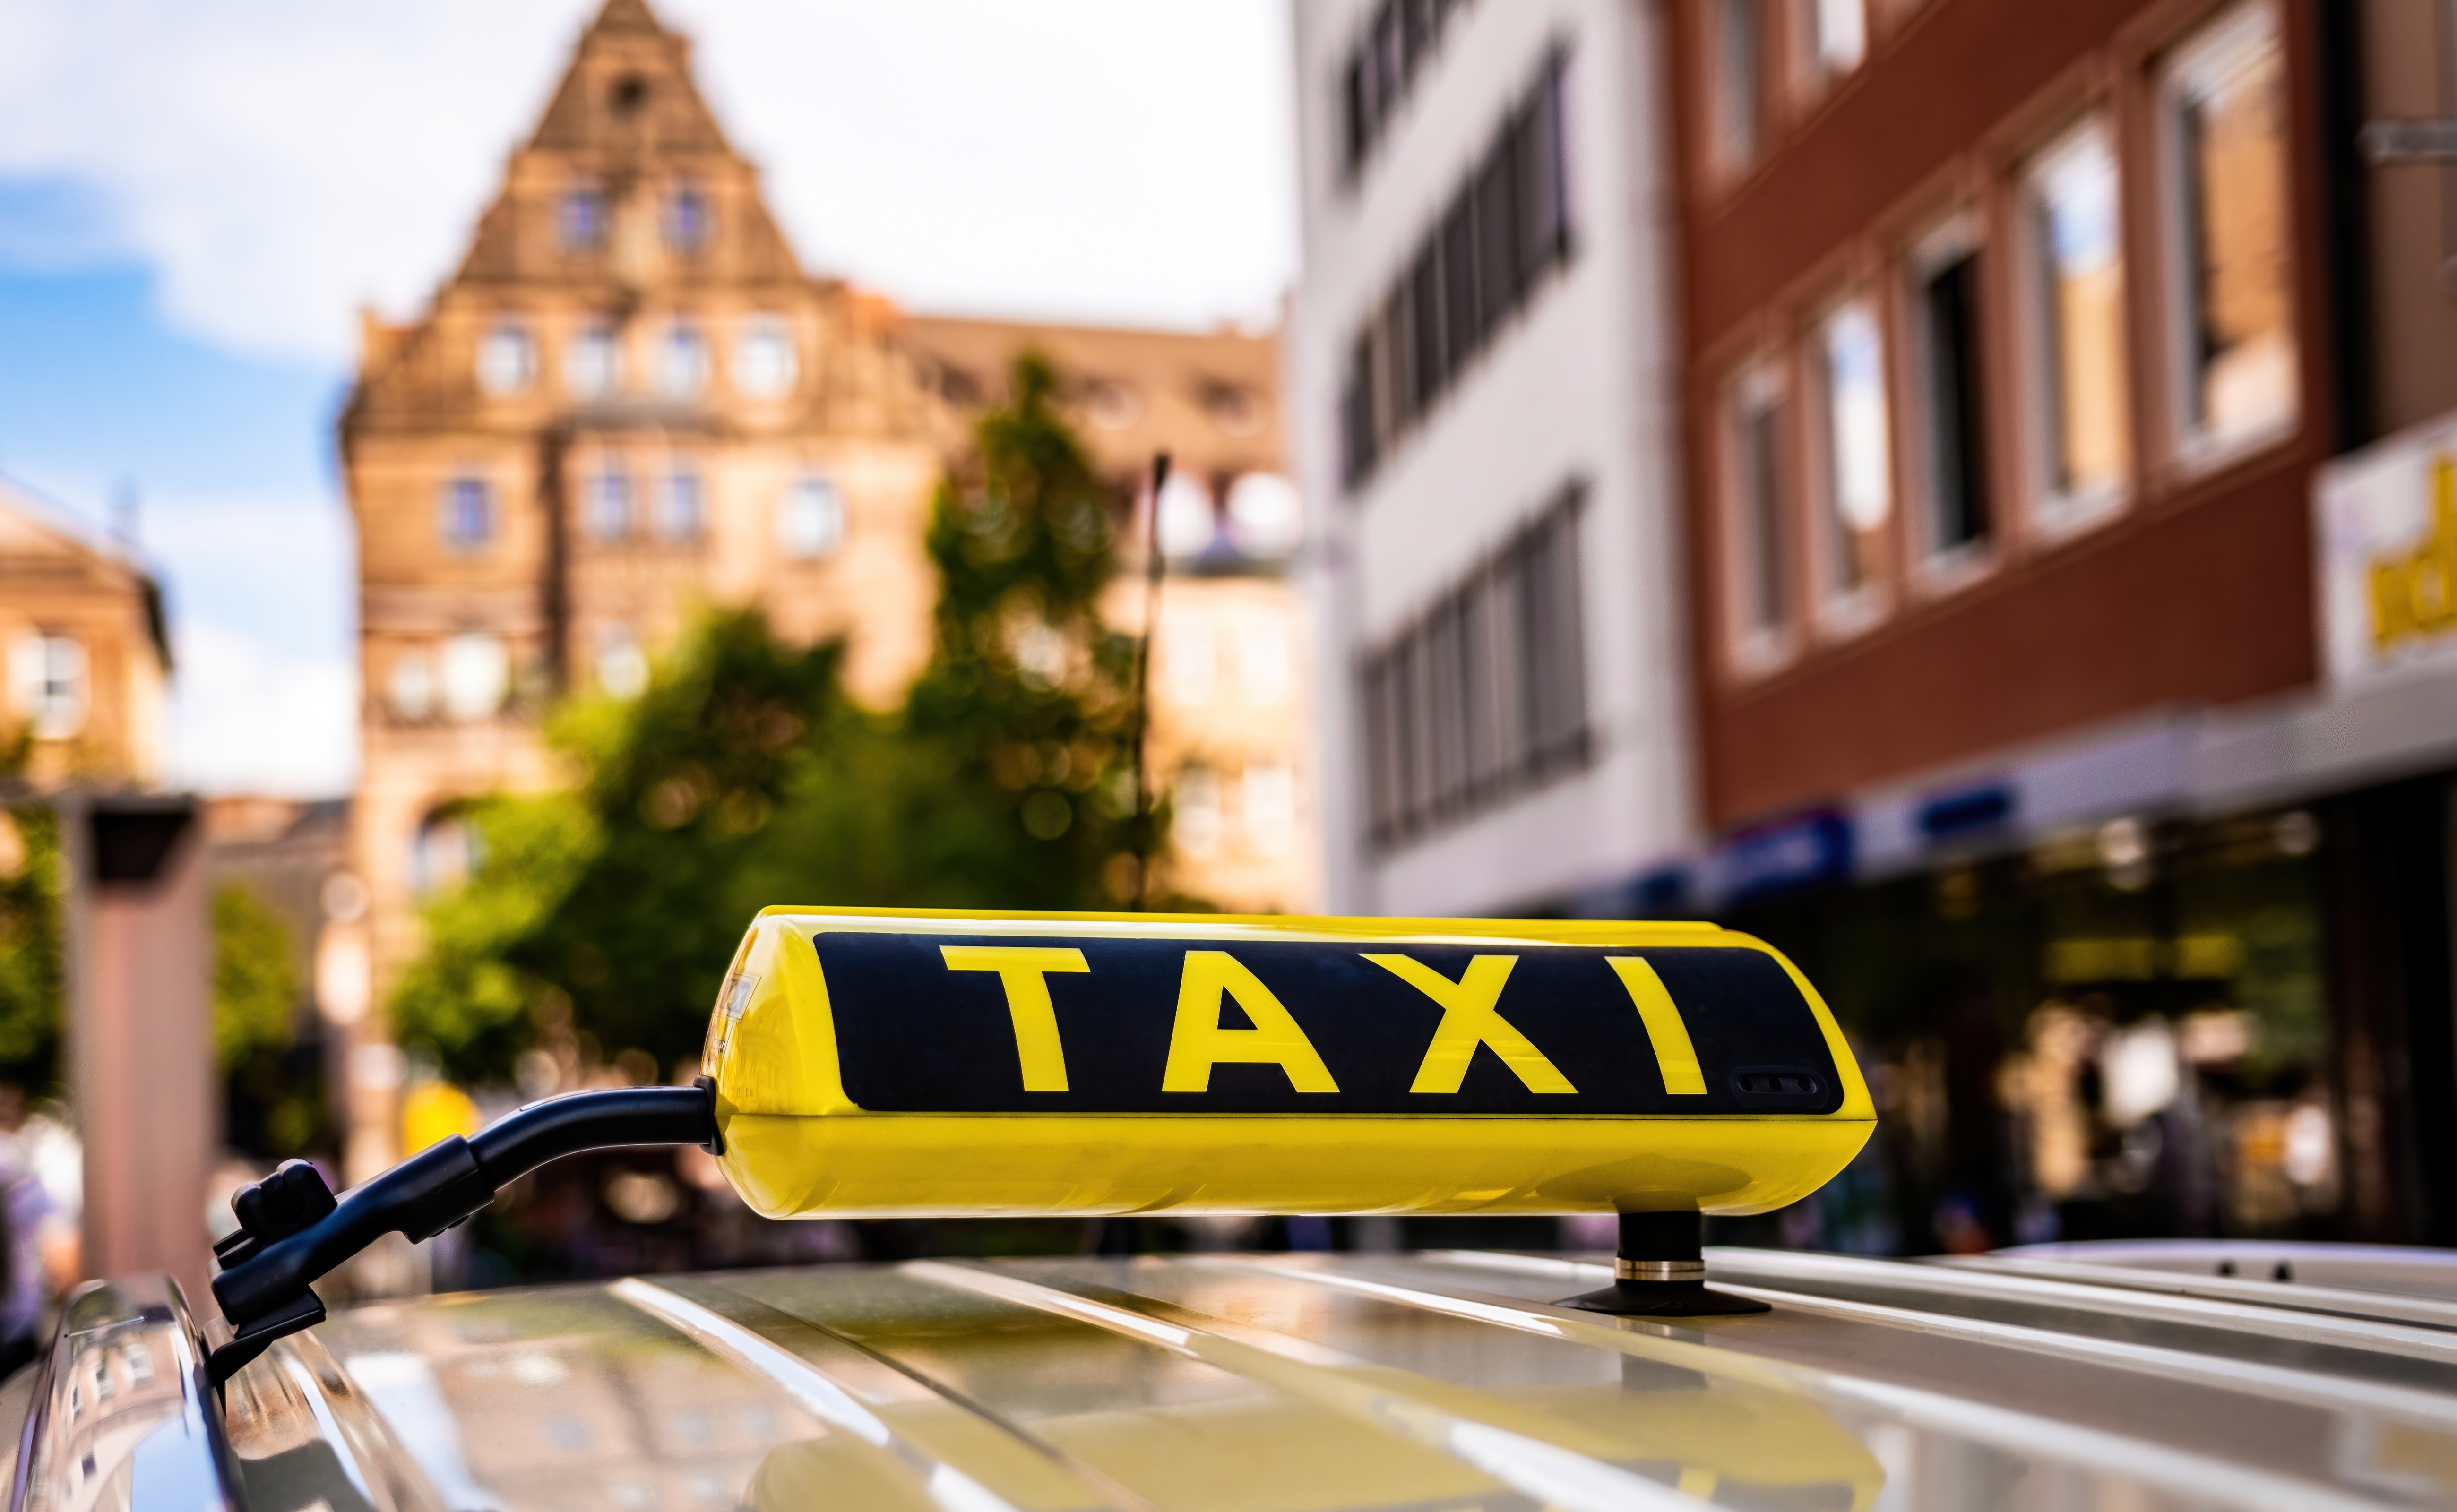 Señal amarilla de taxi. | Fuente: Shutterstock